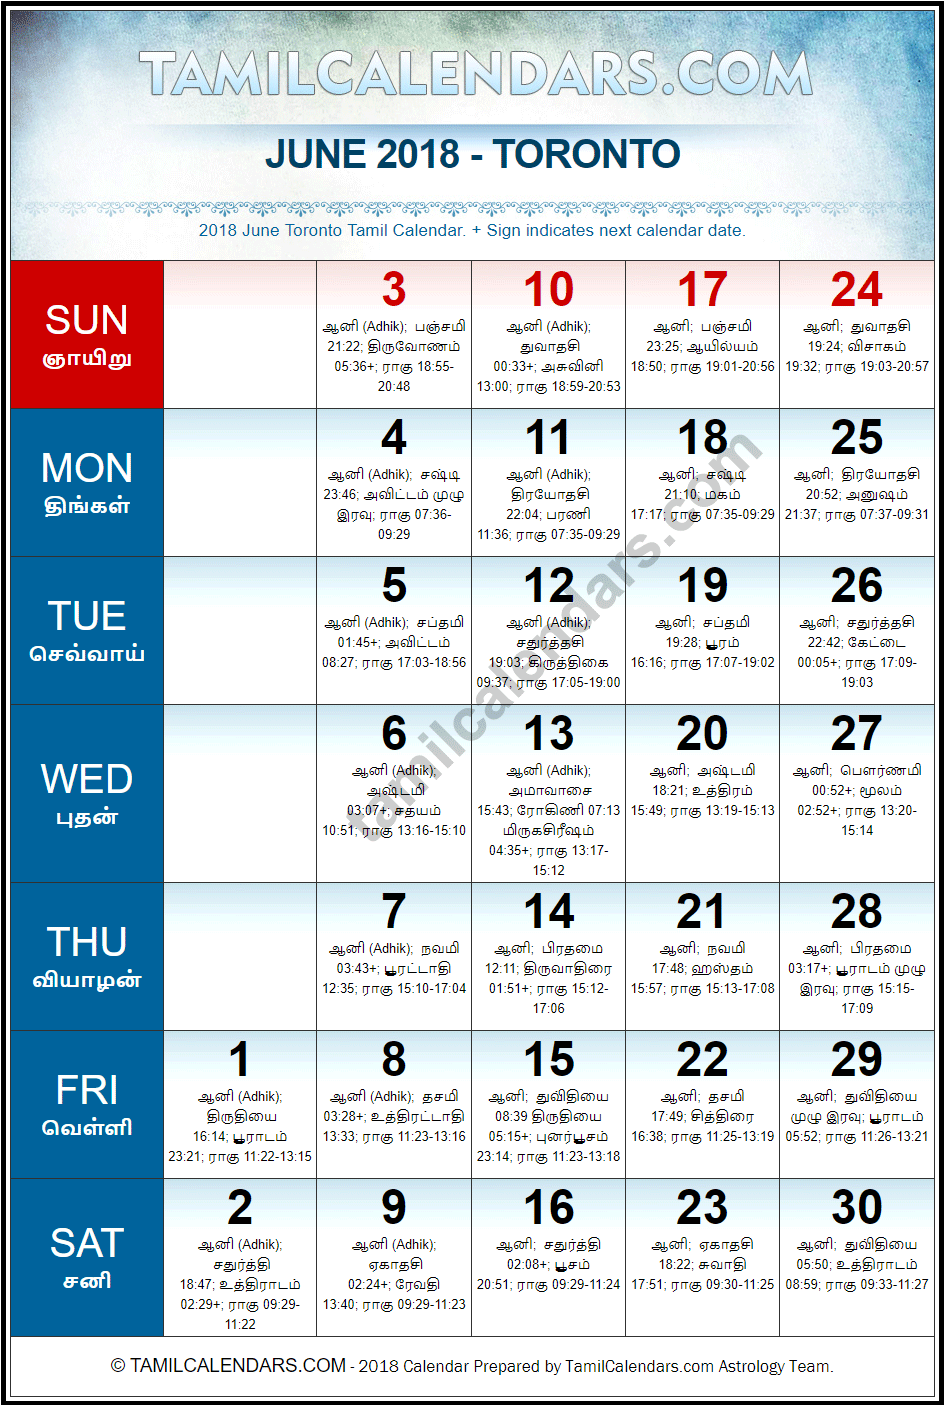 June 2018 Tamil Calendar for Toronto, Canada